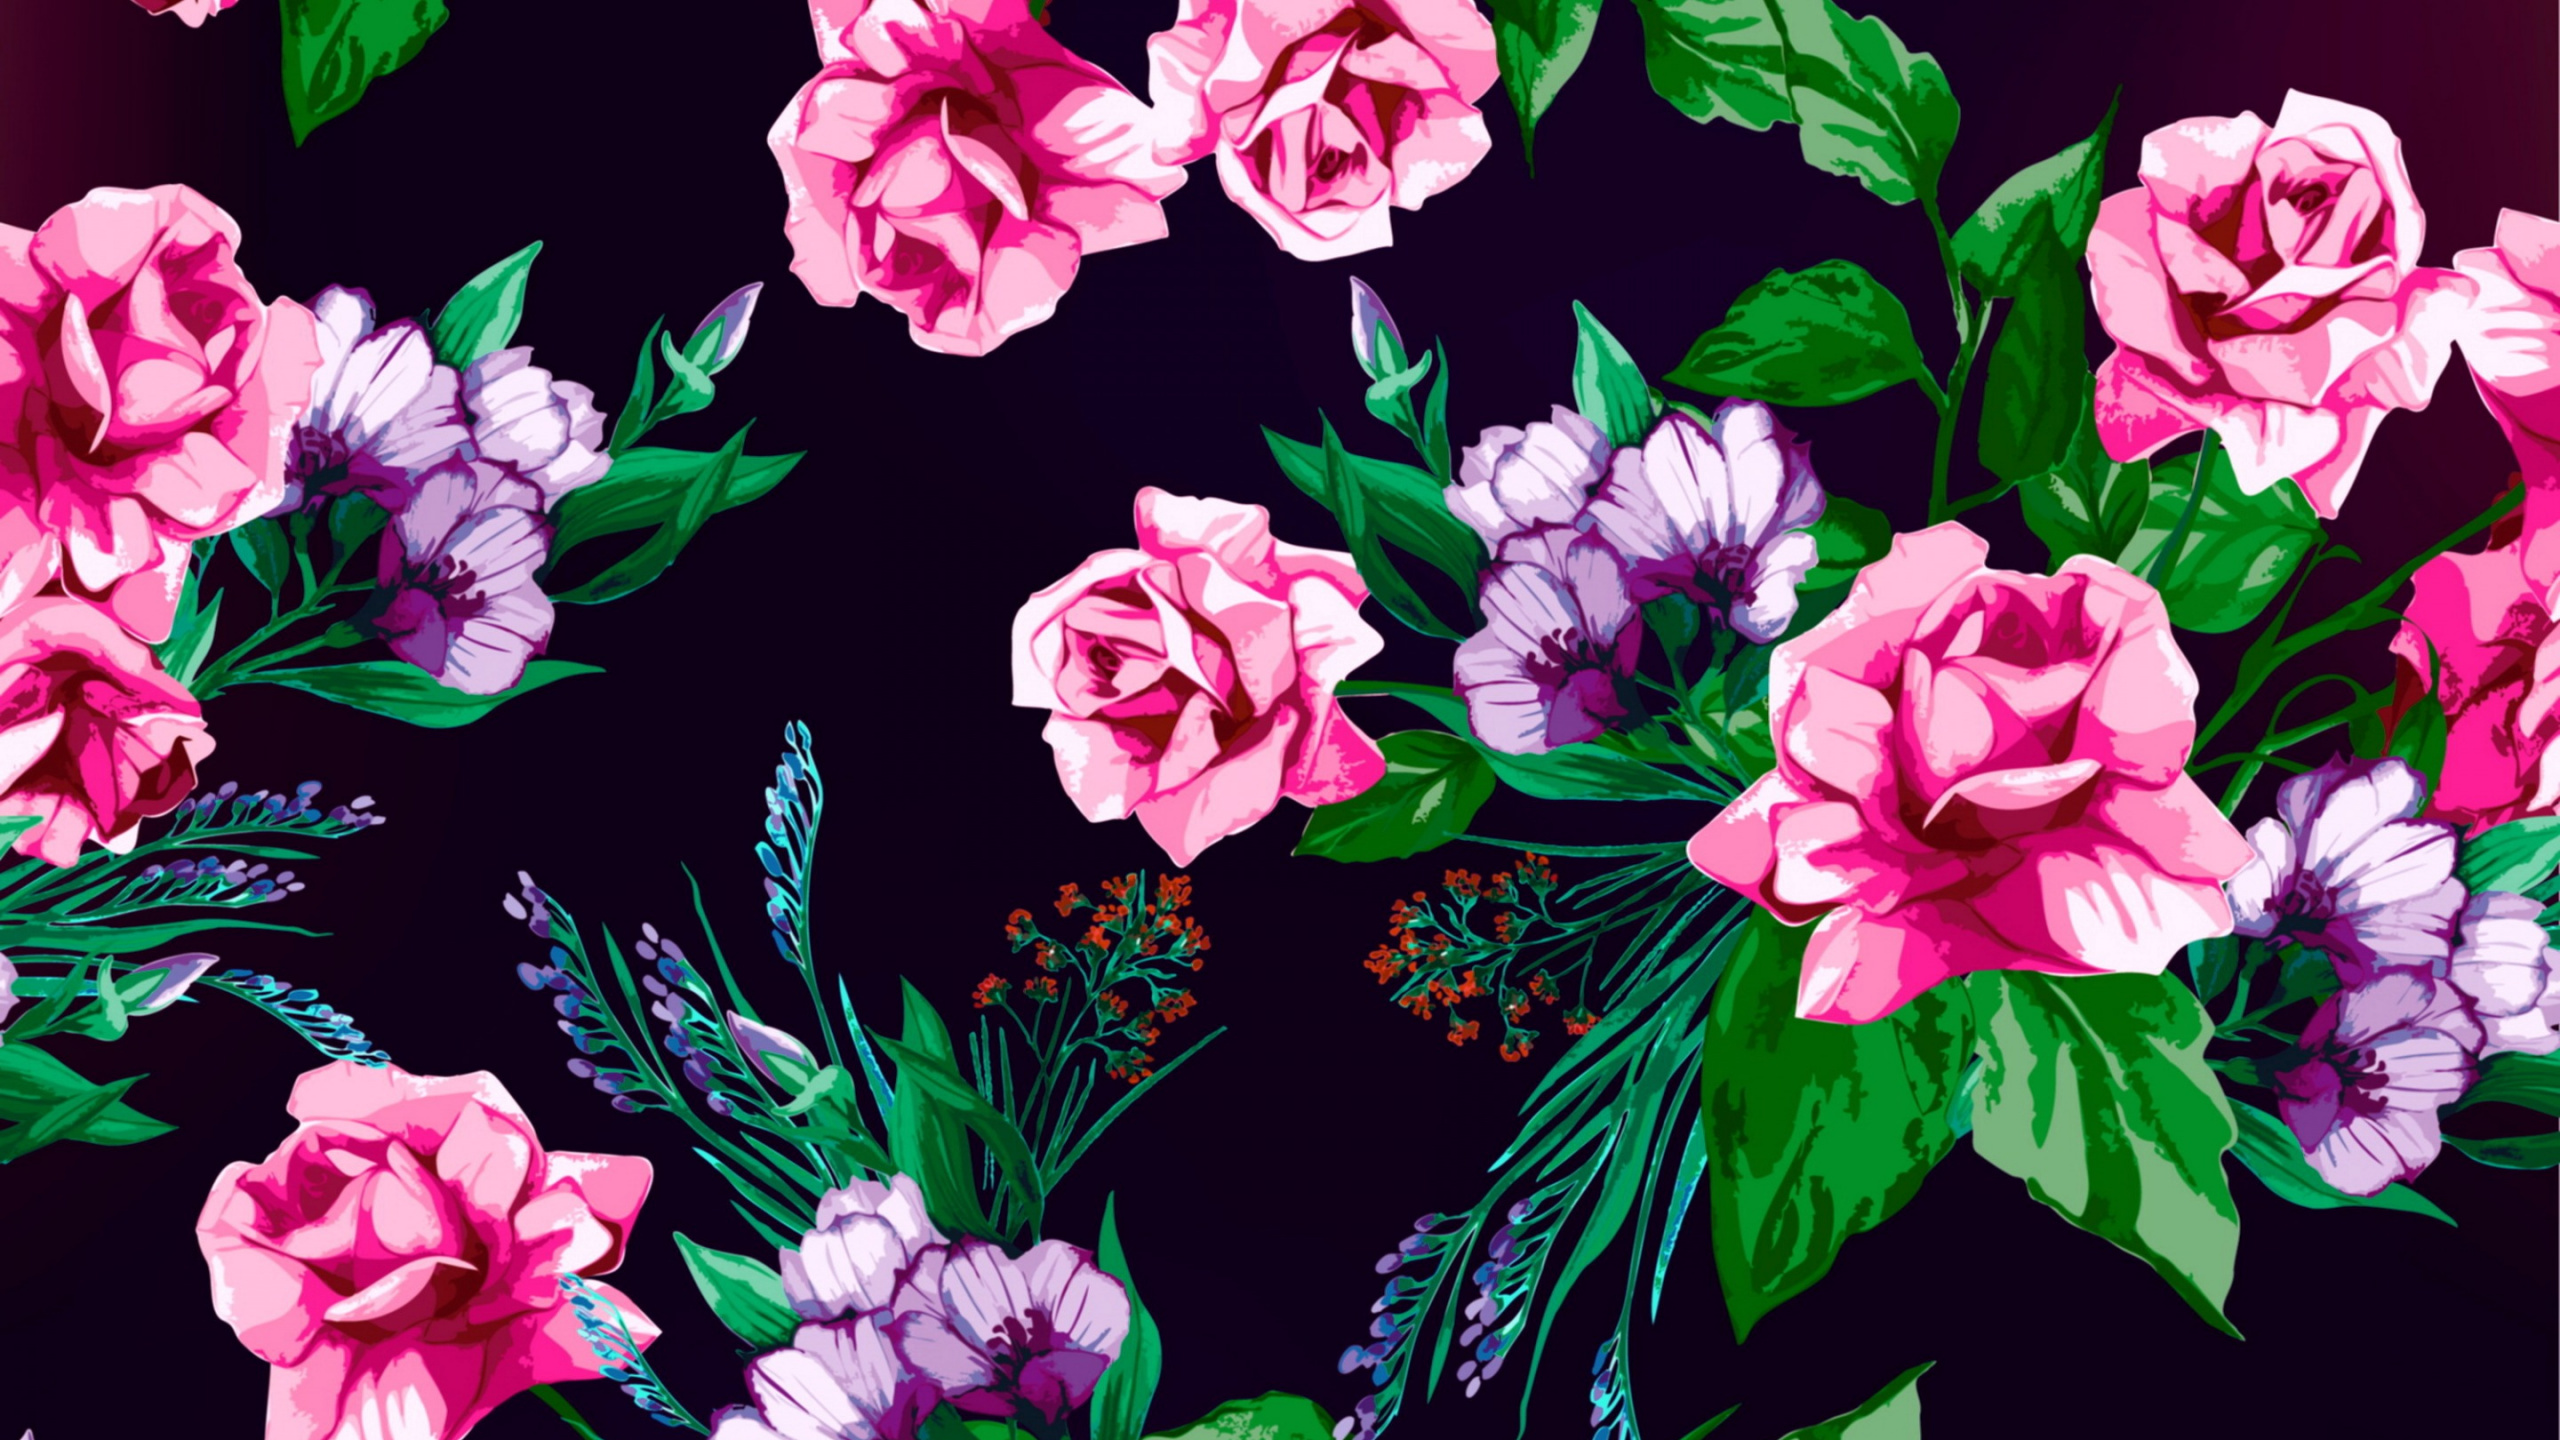 花卉设计, 显花植物, 粉红色, 牡丹, 品红色 壁纸 2560x1440 允许